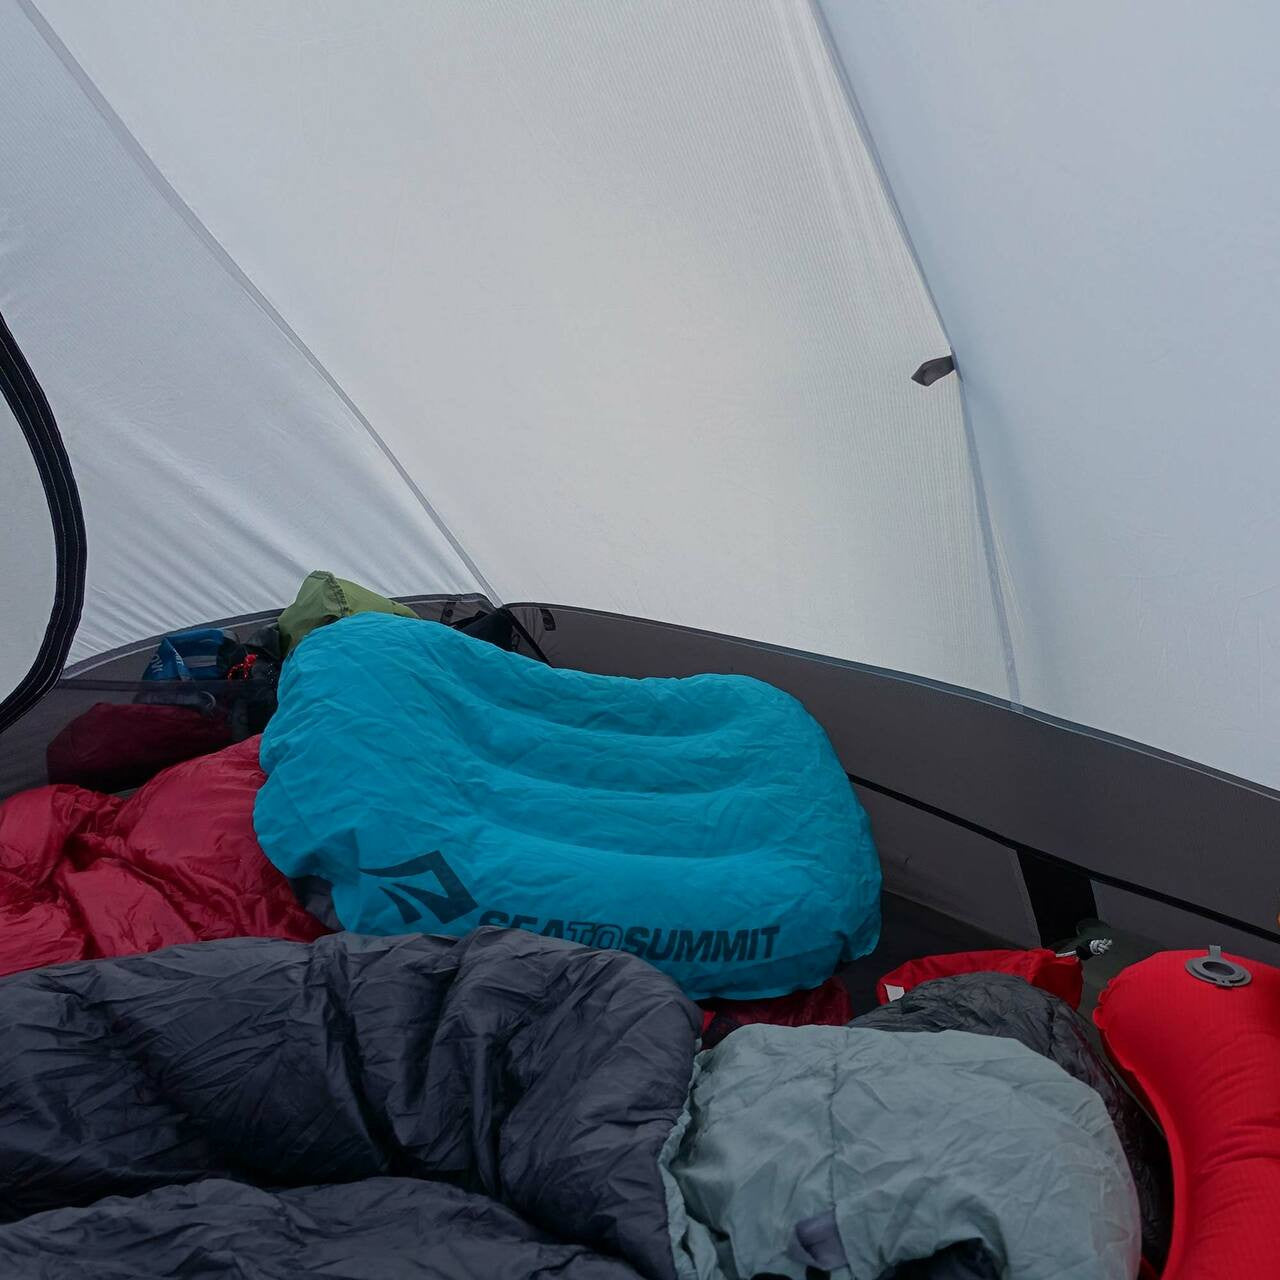 Alto TR1 - One Person Ultralight Tent 半自立型超輕單人帳篷